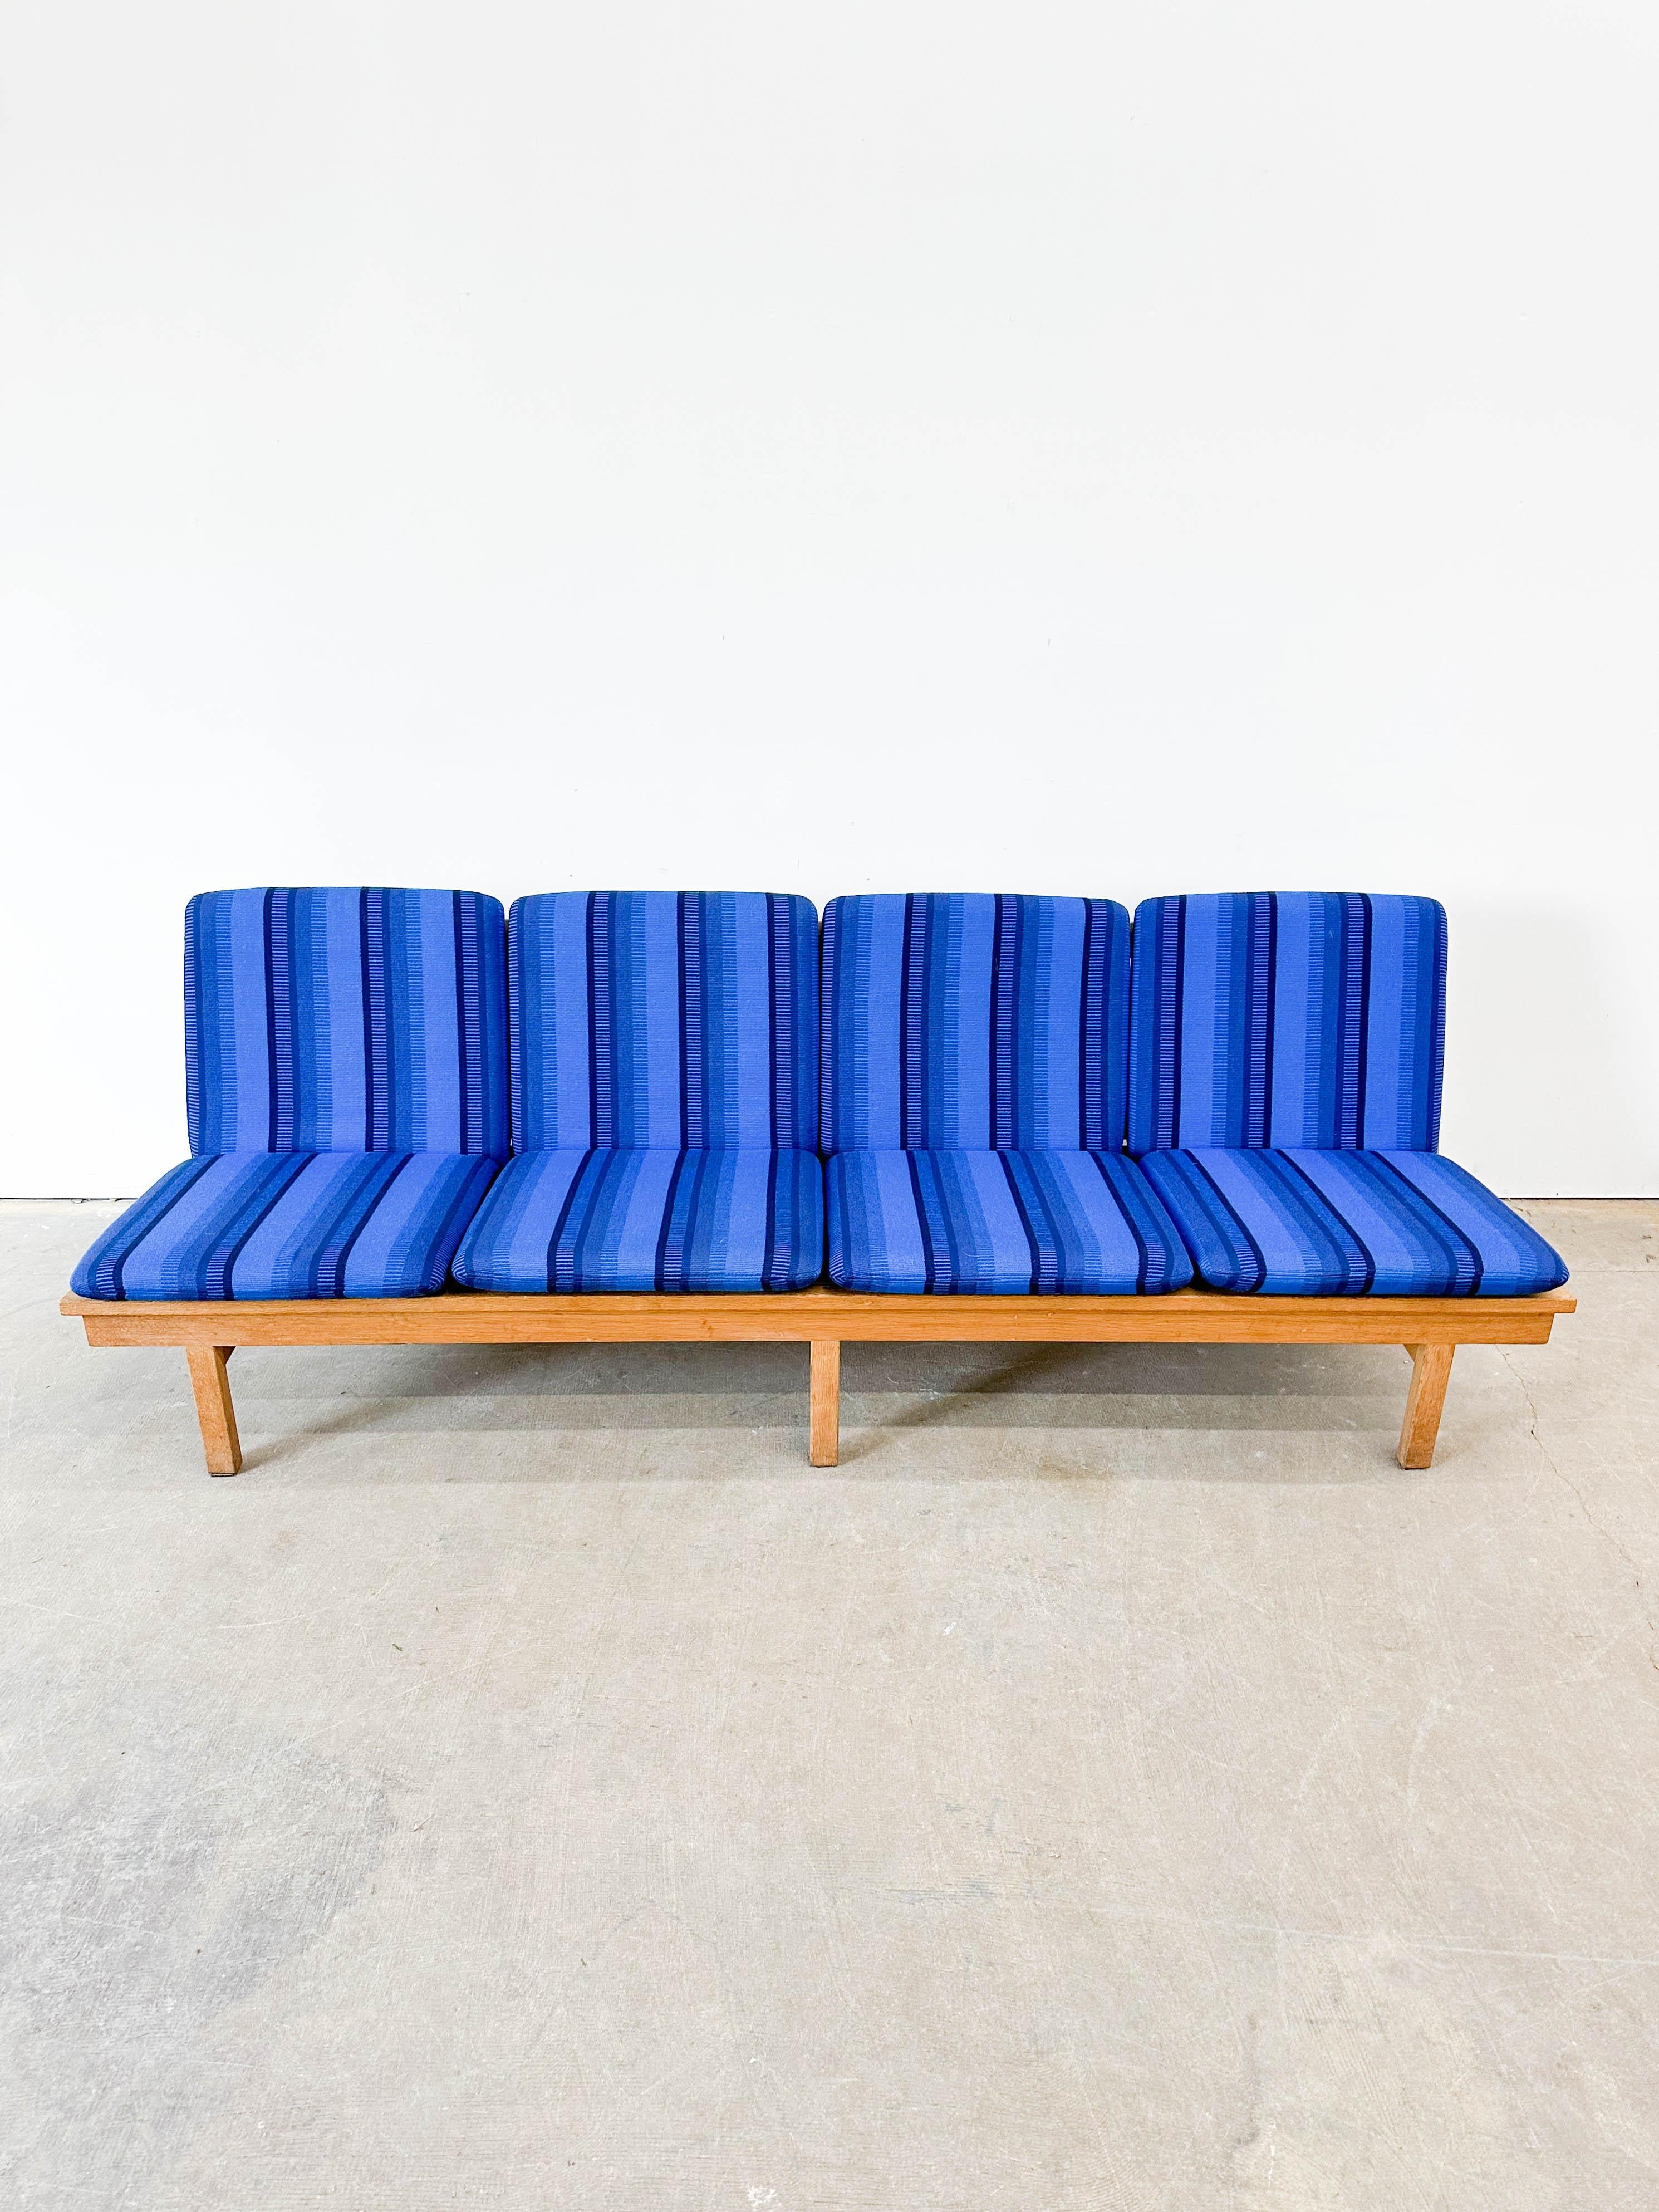 Wunderschönes viersitziges Sofa aus massiver Eiche, Modell 2219, vom dänischen Designer Borge Mogensen. Dieses Exemplar wurde in den 1960er Jahren von der Fredericia Stolefabrik hergestellt und hat fantastische originale Wollkissenbezüge in einem